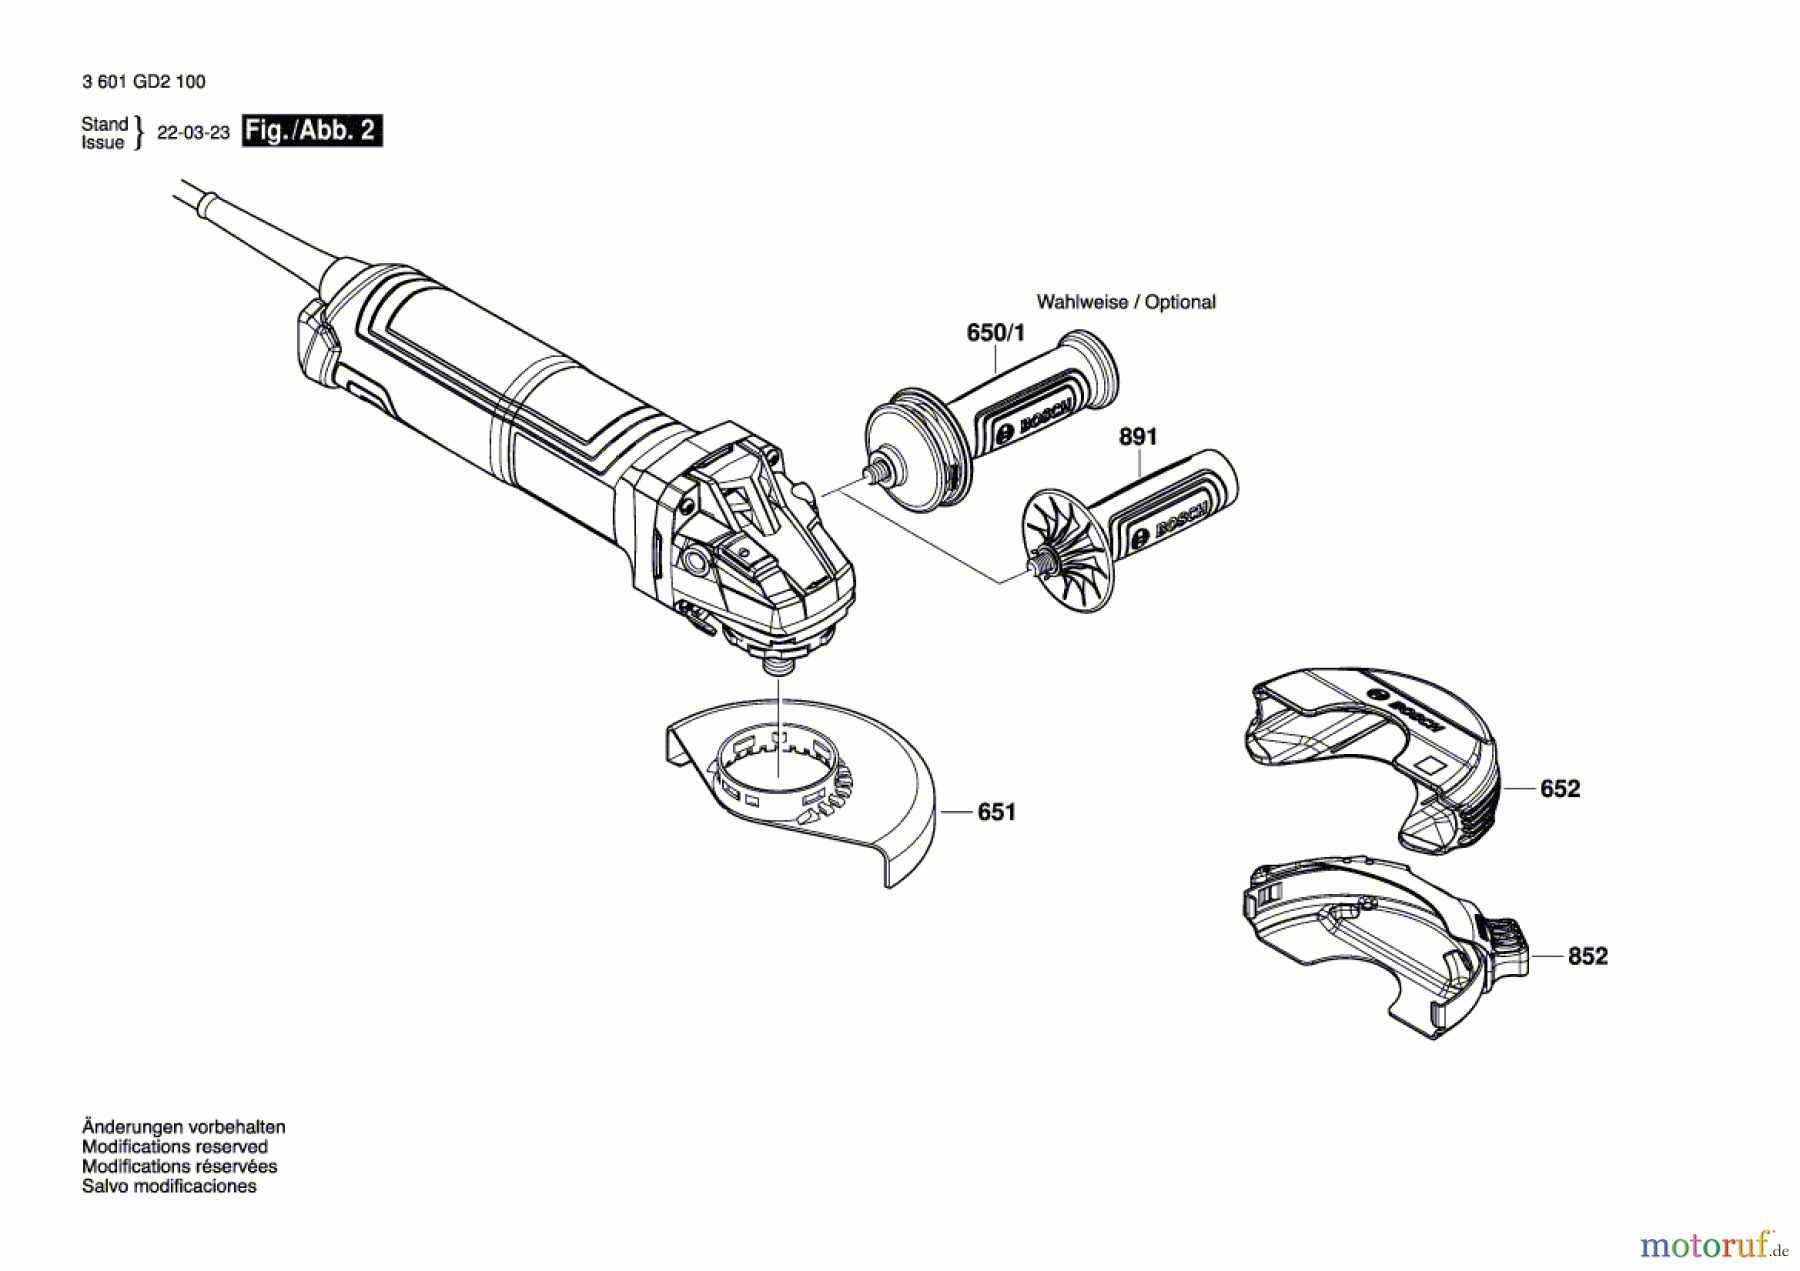  Bosch Werkzeug Winkelschleifer GWX 14-125 S Seite 2